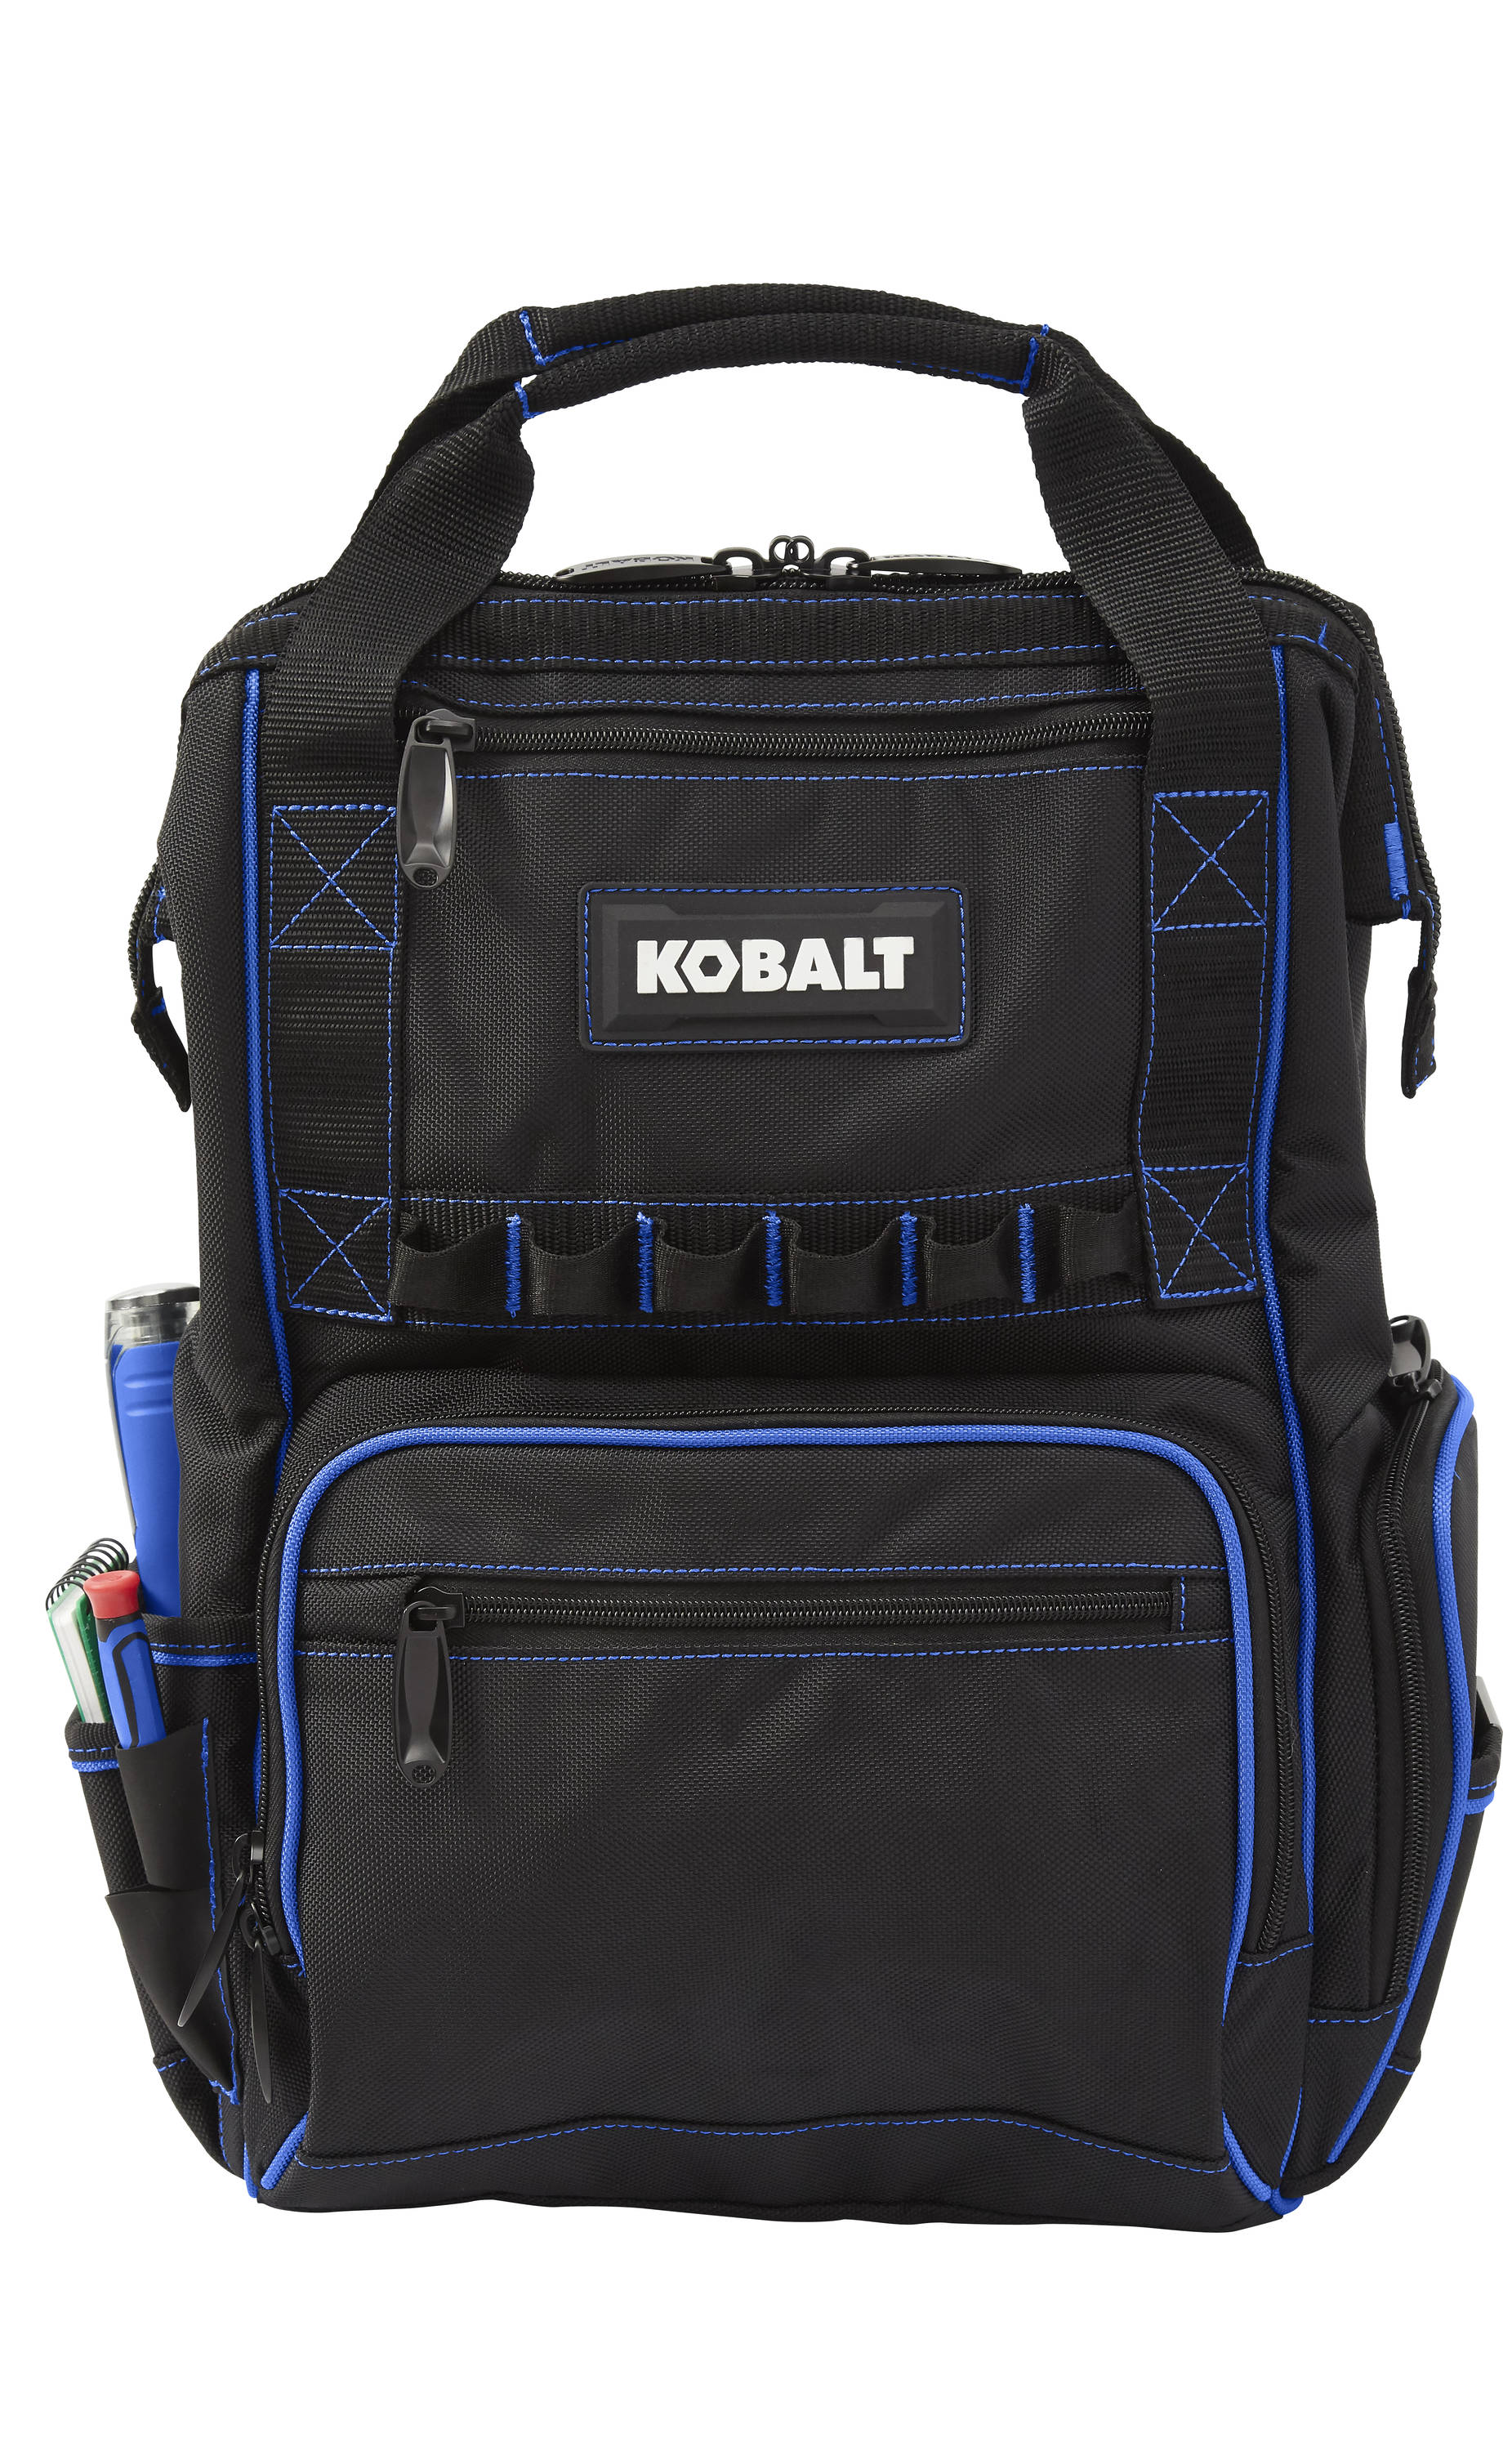 Kobalt Electrician's Tool Kit, 12-16 Awg Stranded